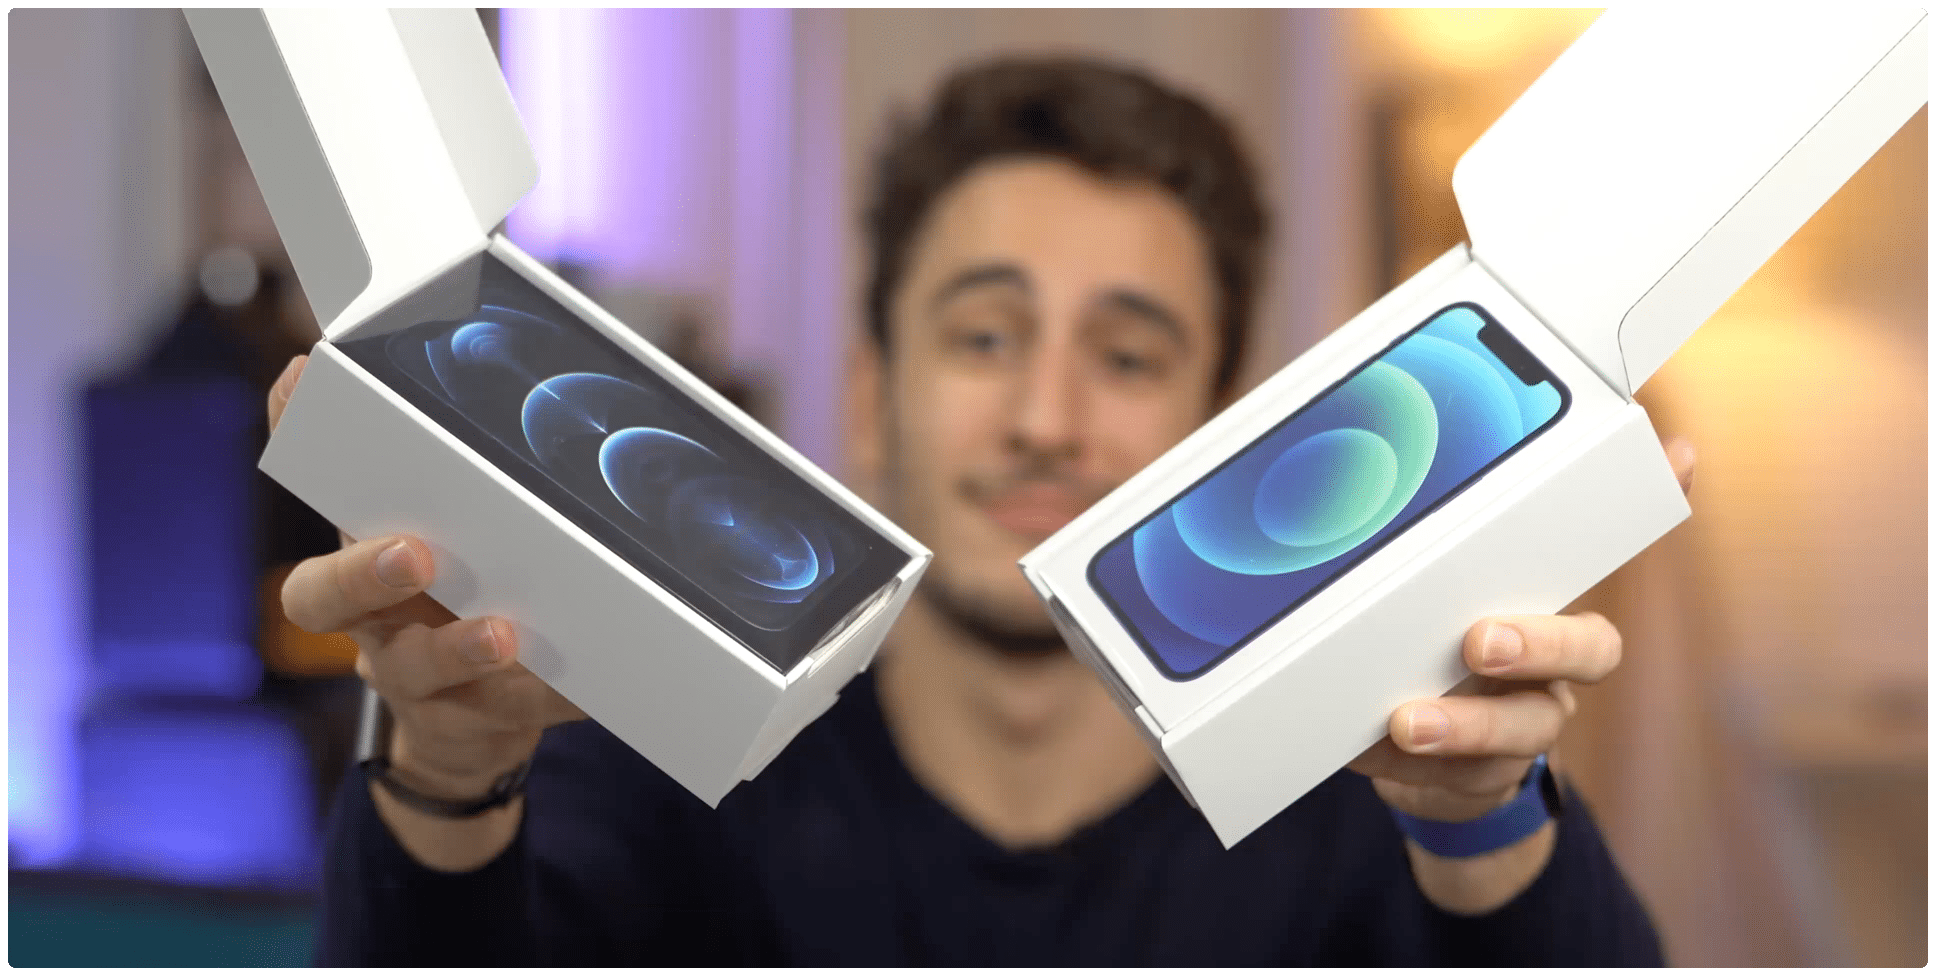 iPhones vendidos na França com duas caixas — uma para os EarPods